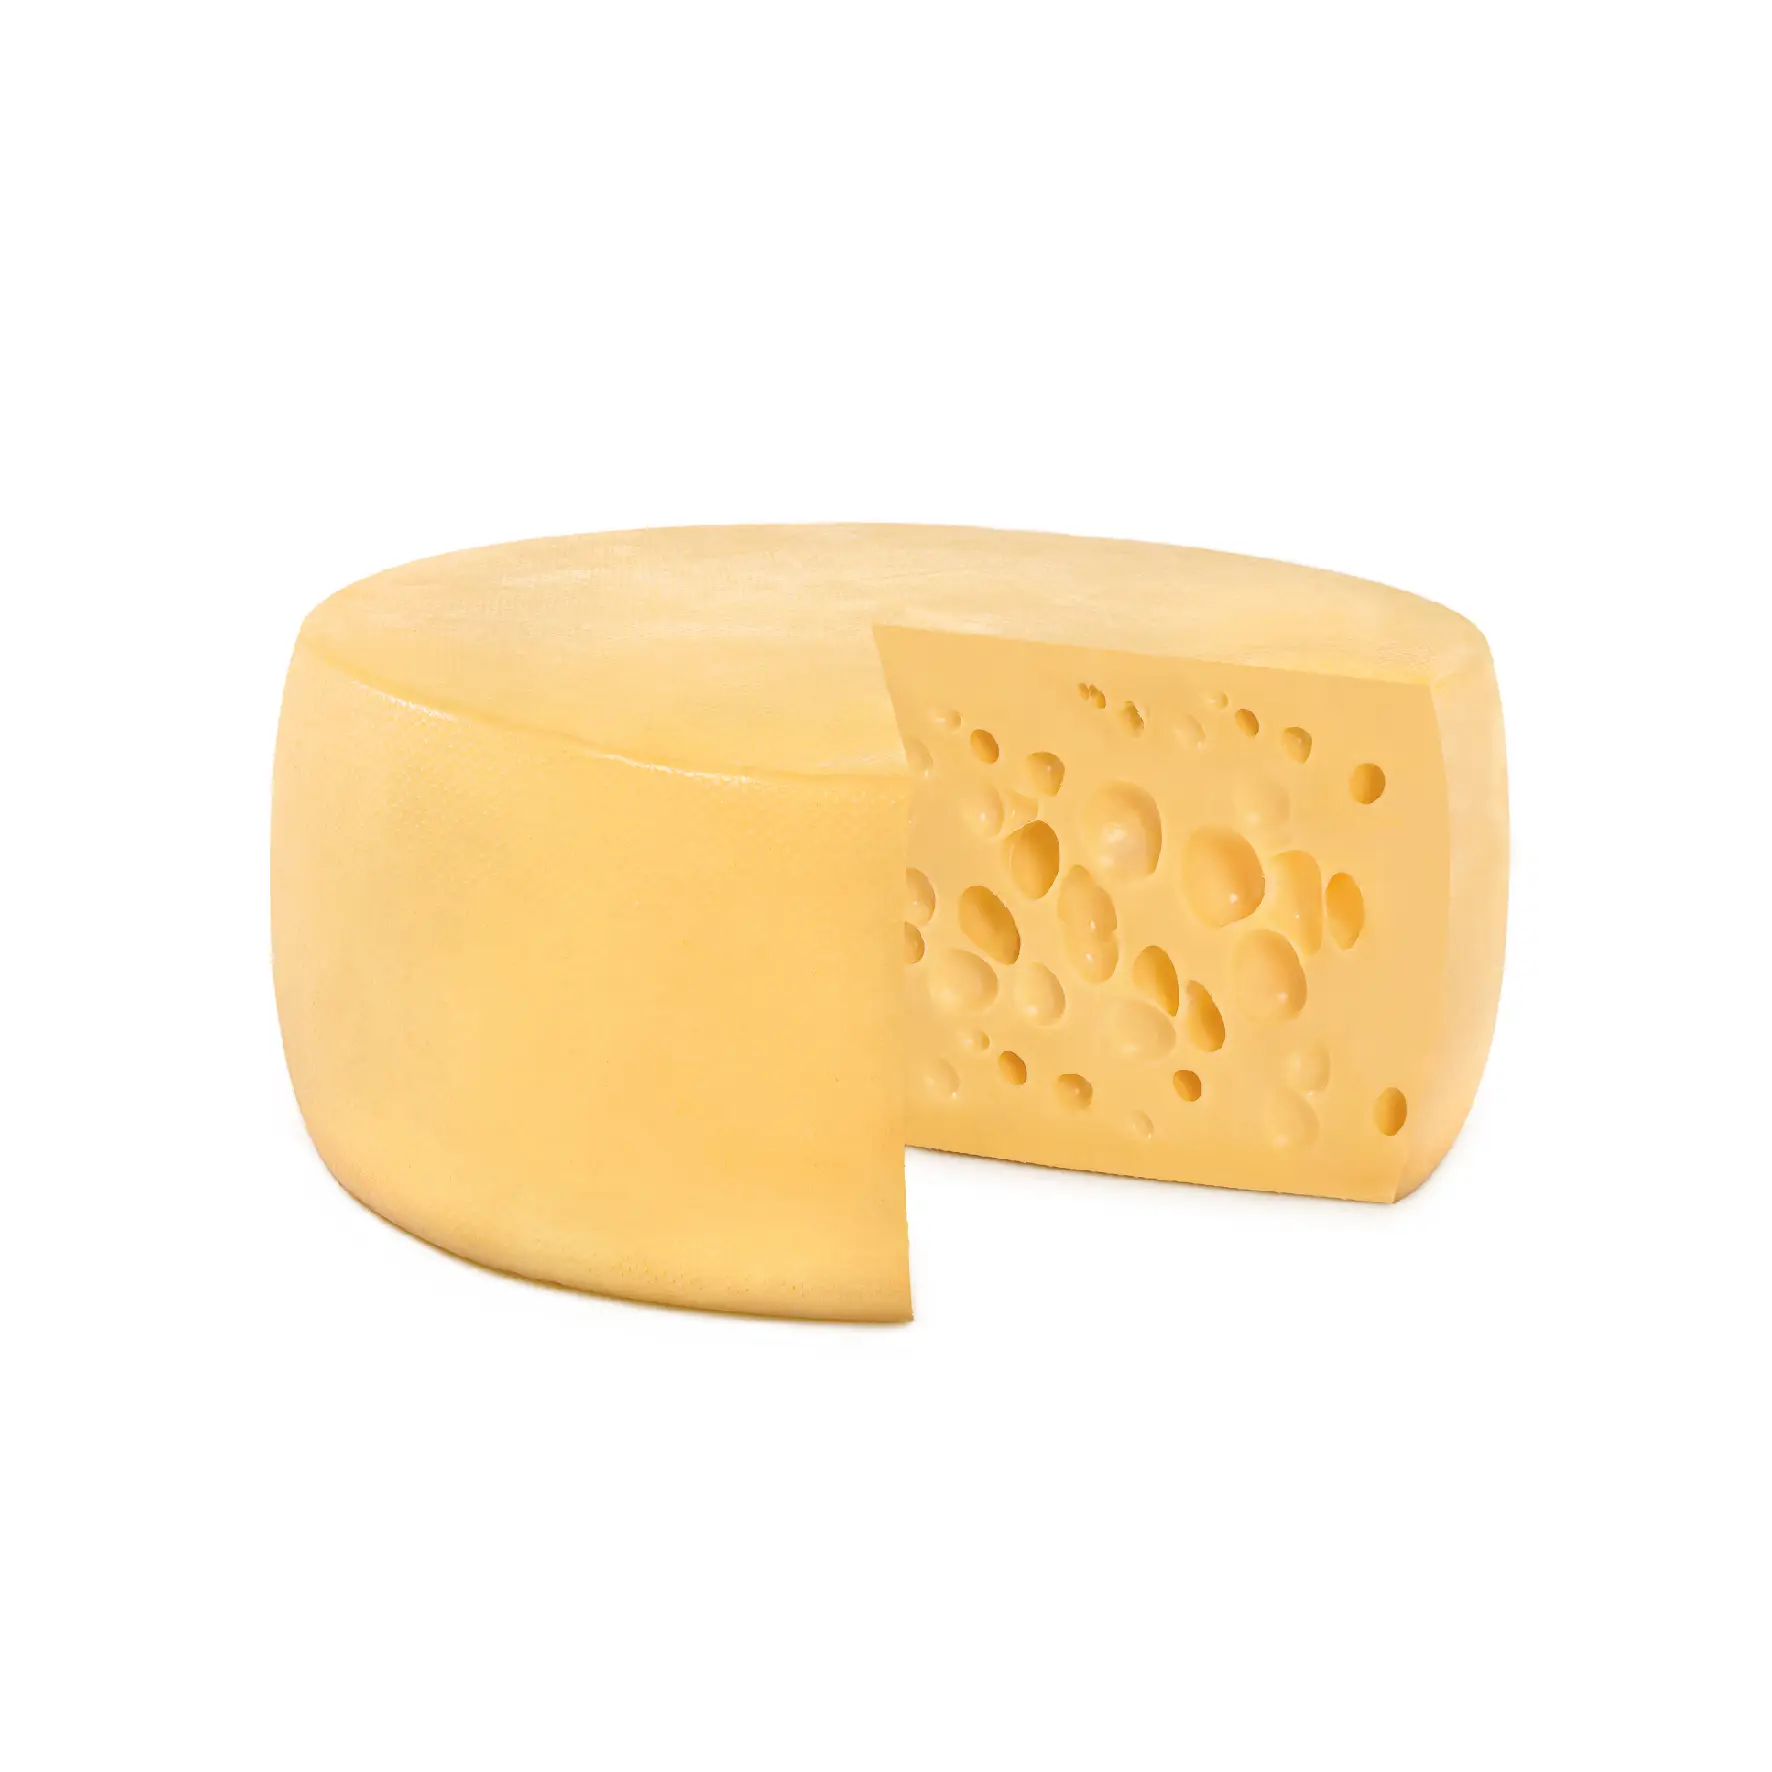 Mezzo Secco Whole Cheese Delivery